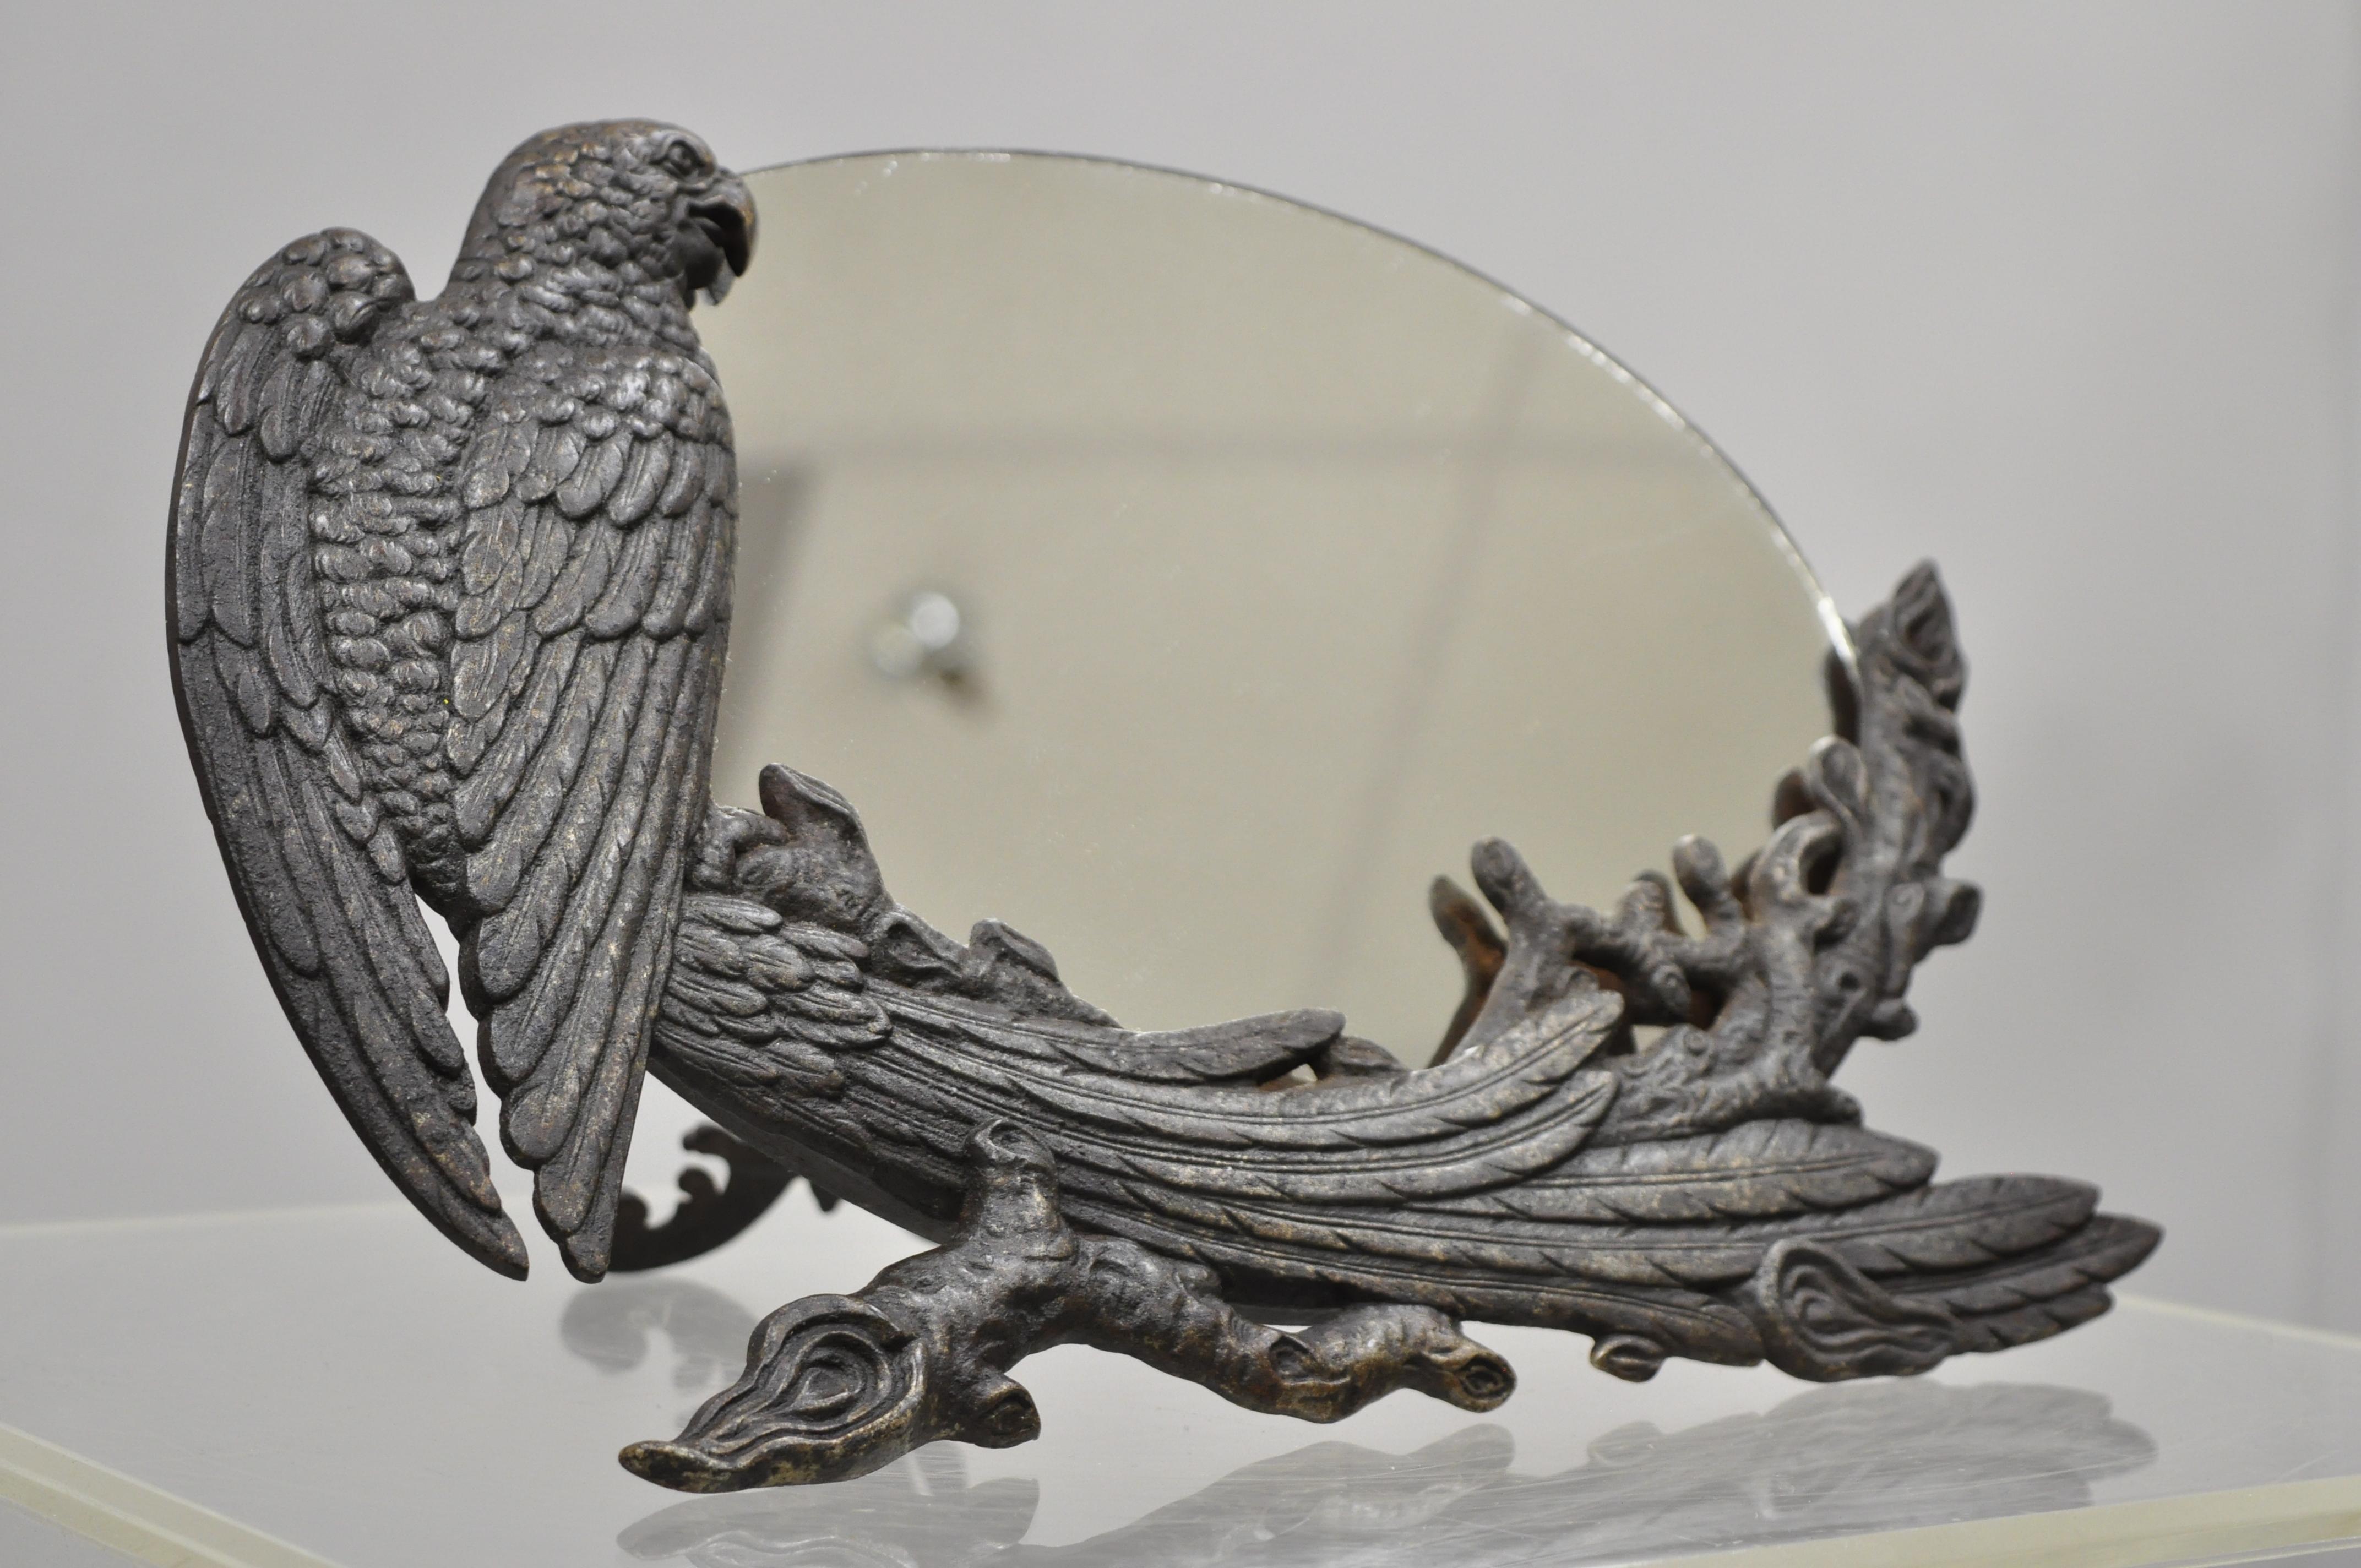 Miroir de table antique Art Nouveau en fonte avec aigle et phénix, vers le début du 20e siècle. Mesures : 8